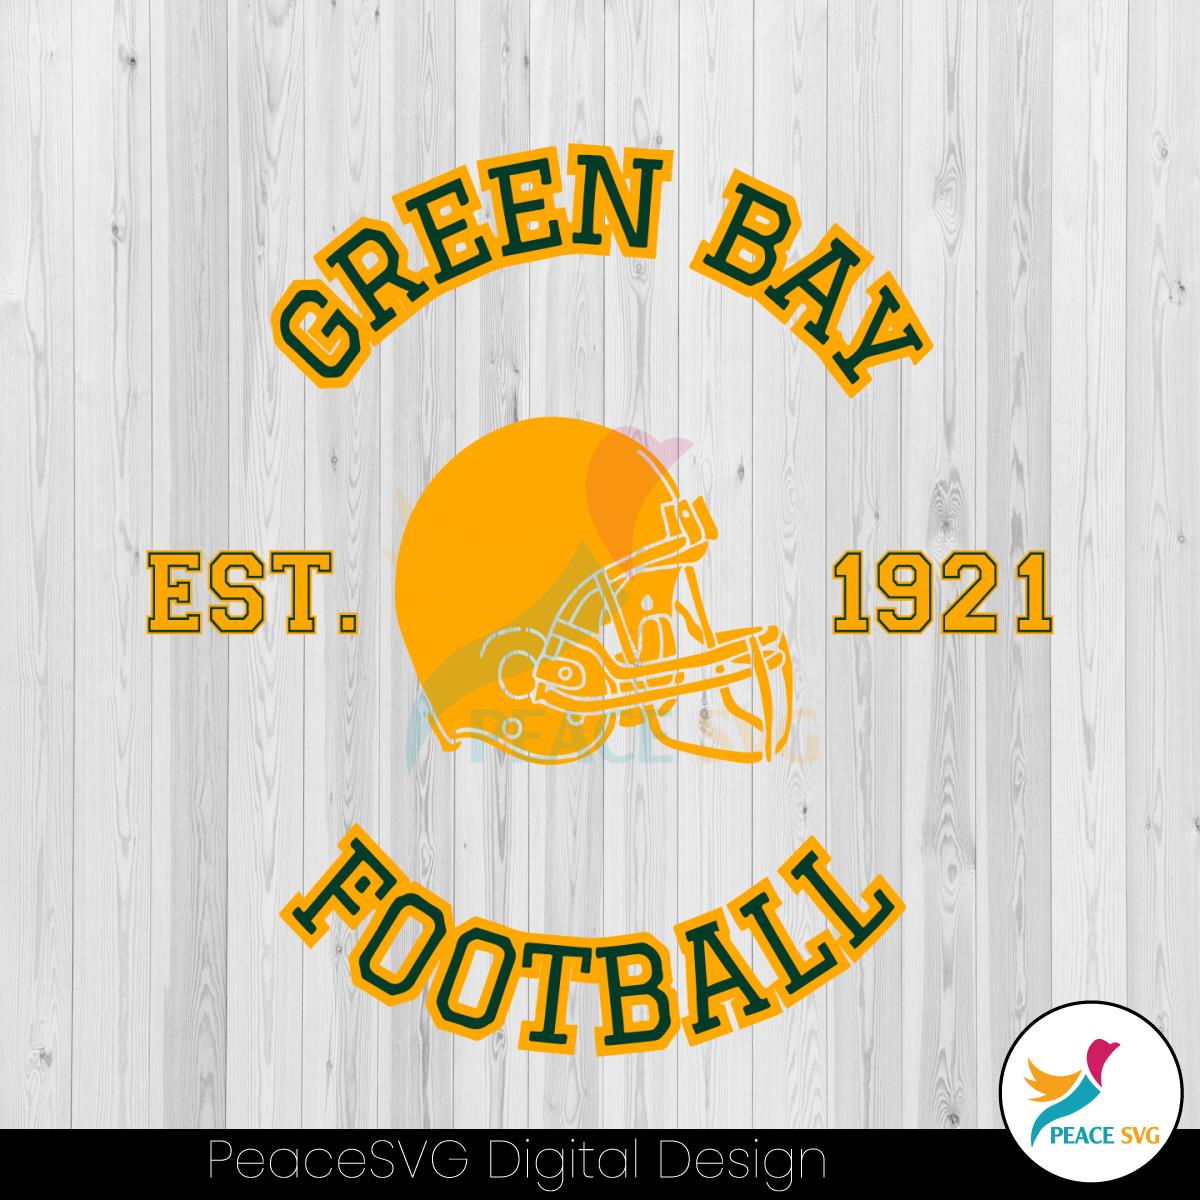 green-bay-football-est-1921-svg-nfl-team-svg-digital-file